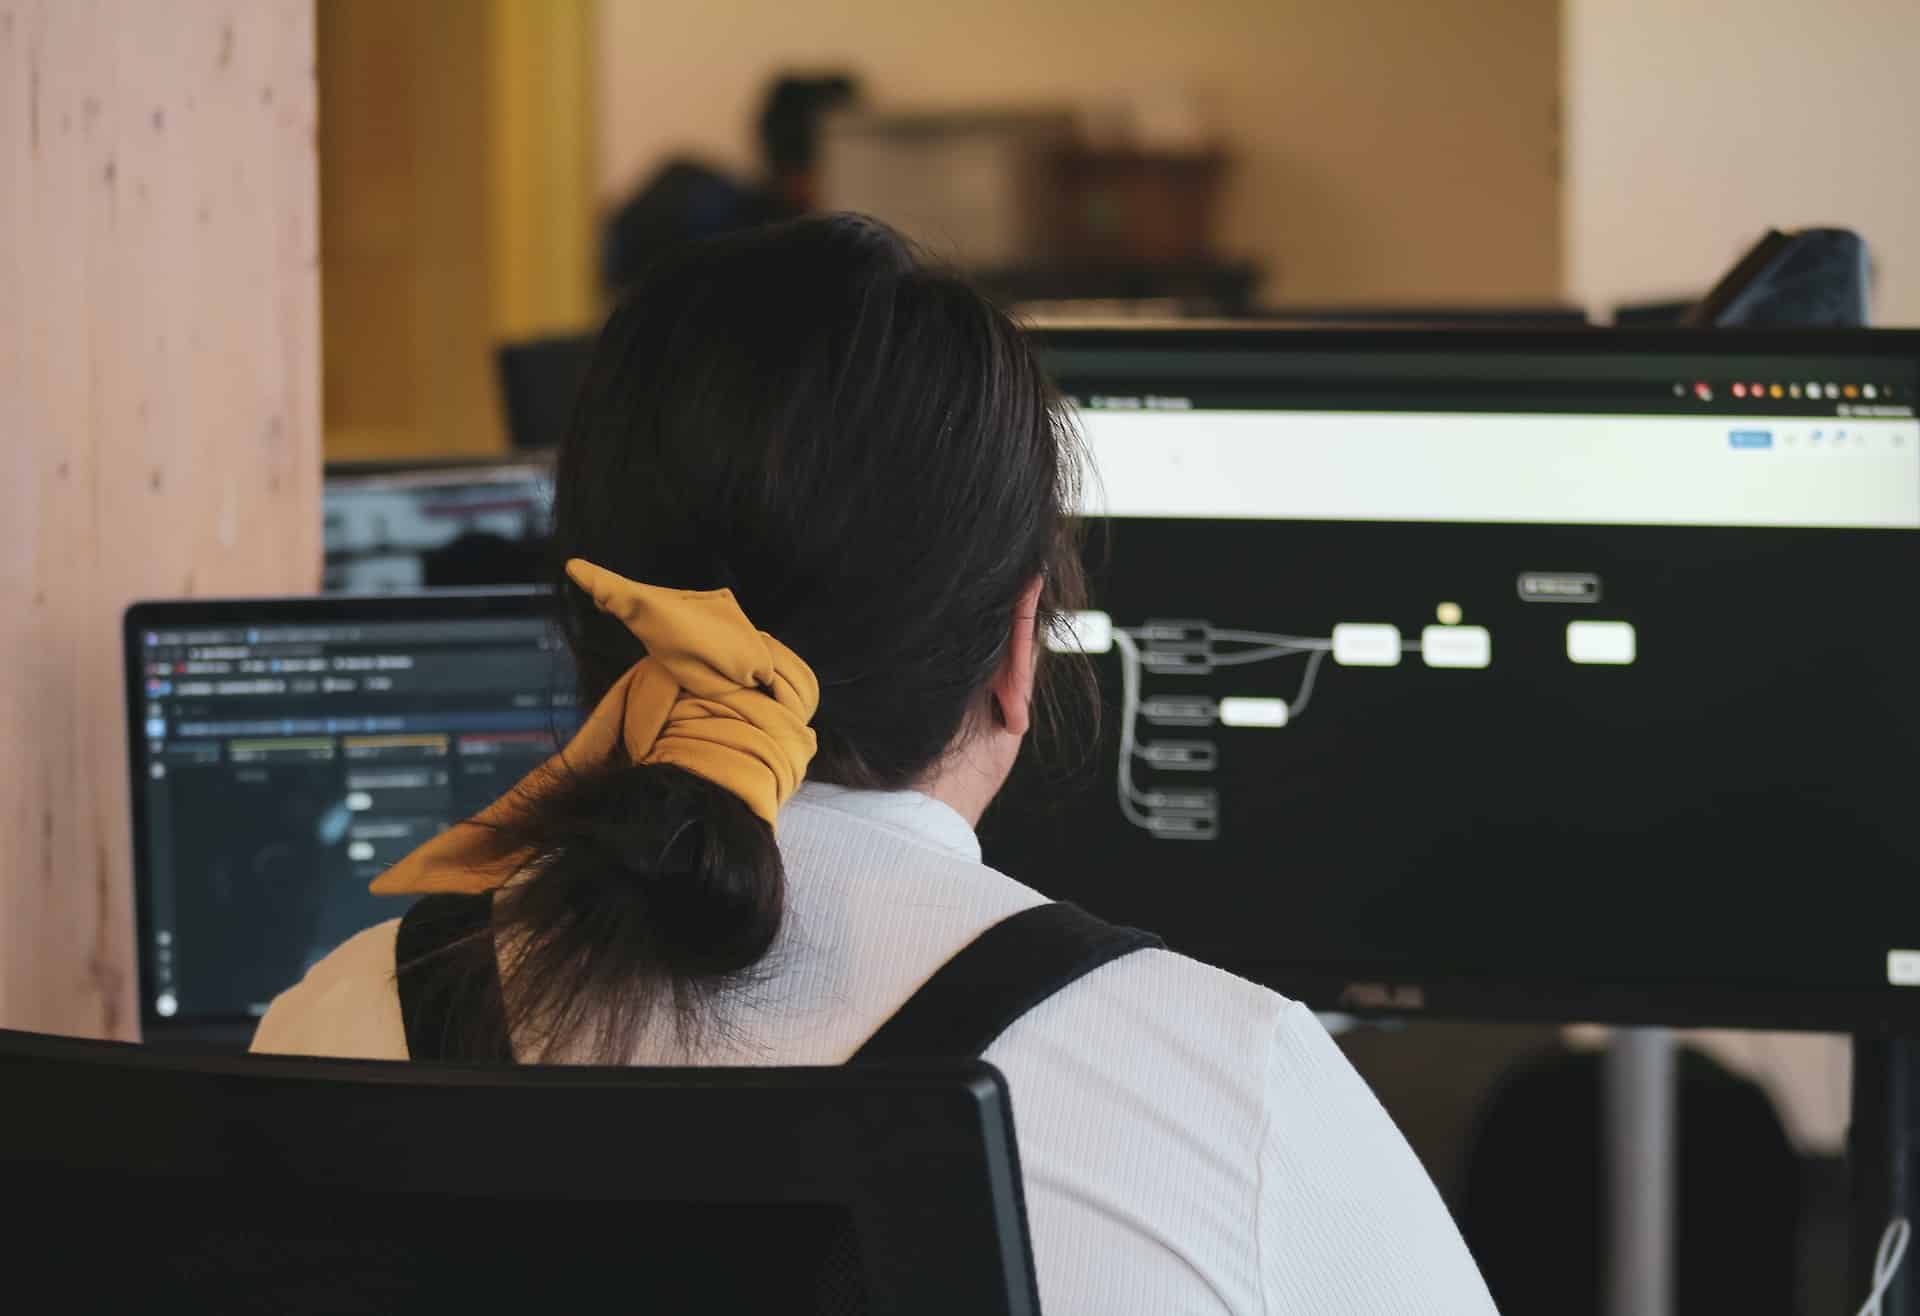 Das Bild einer Frau, die an einem Computer arbeitet, repräsentiert Skywize's Team von engagierten und qualifizierten Fachleuten im Bereich DevOps.